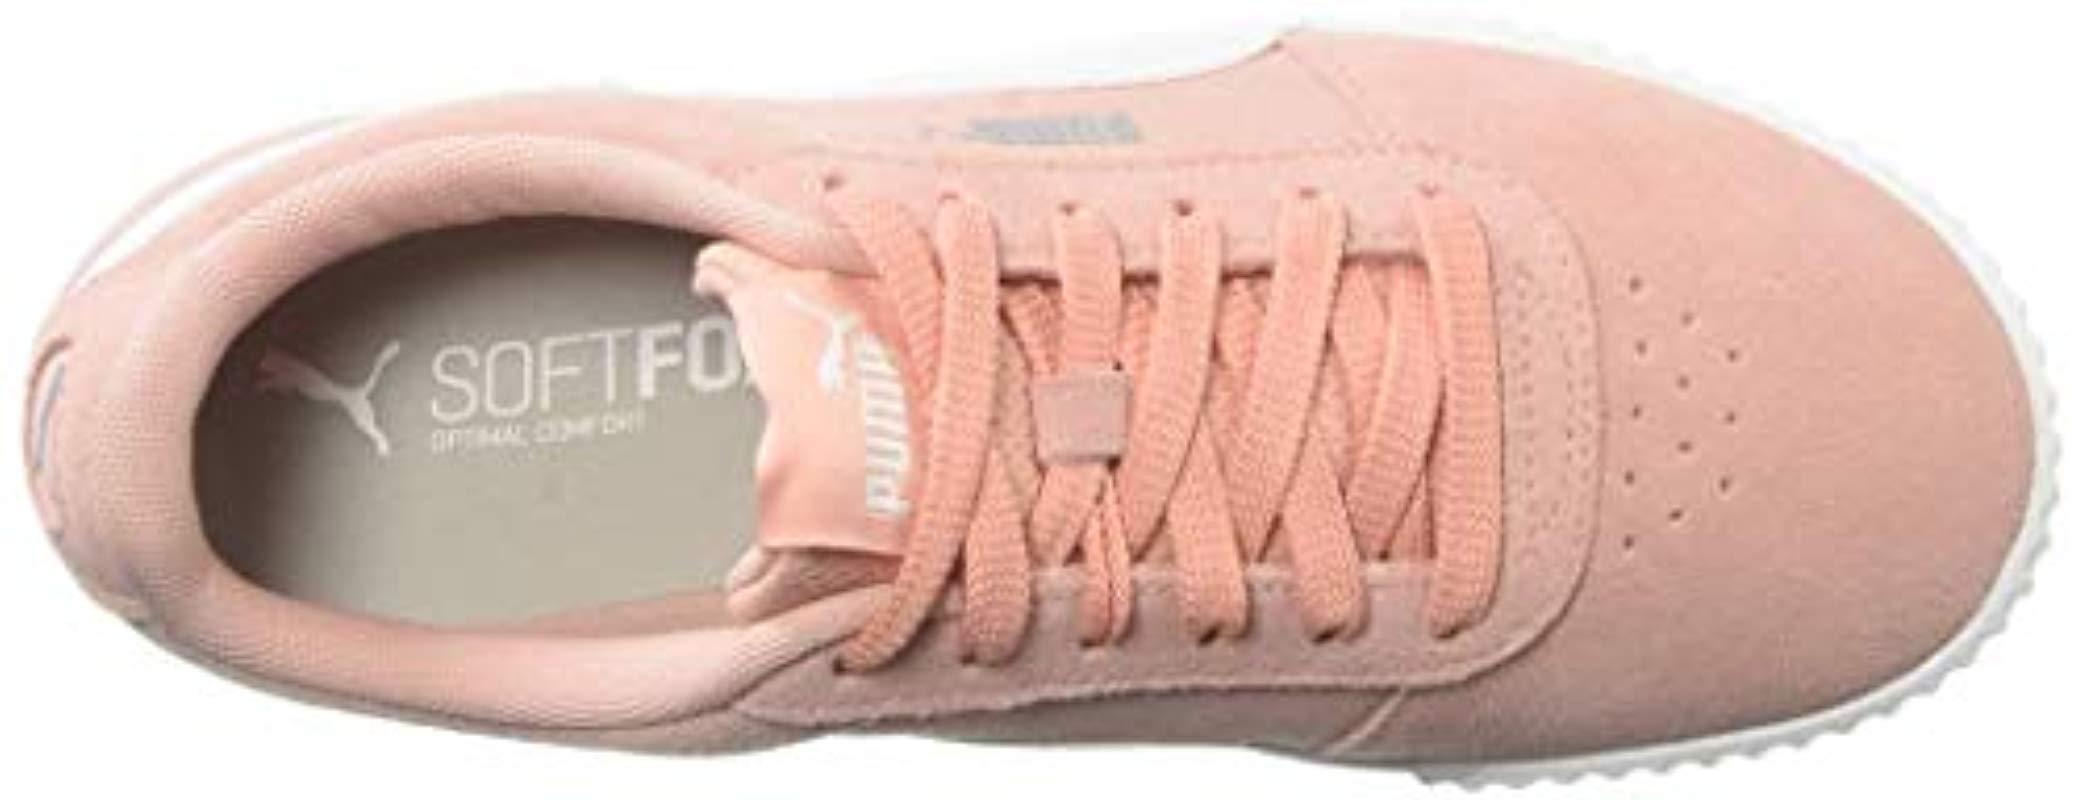 PUMA Suede Carina Sneaker in Pink - Lyst